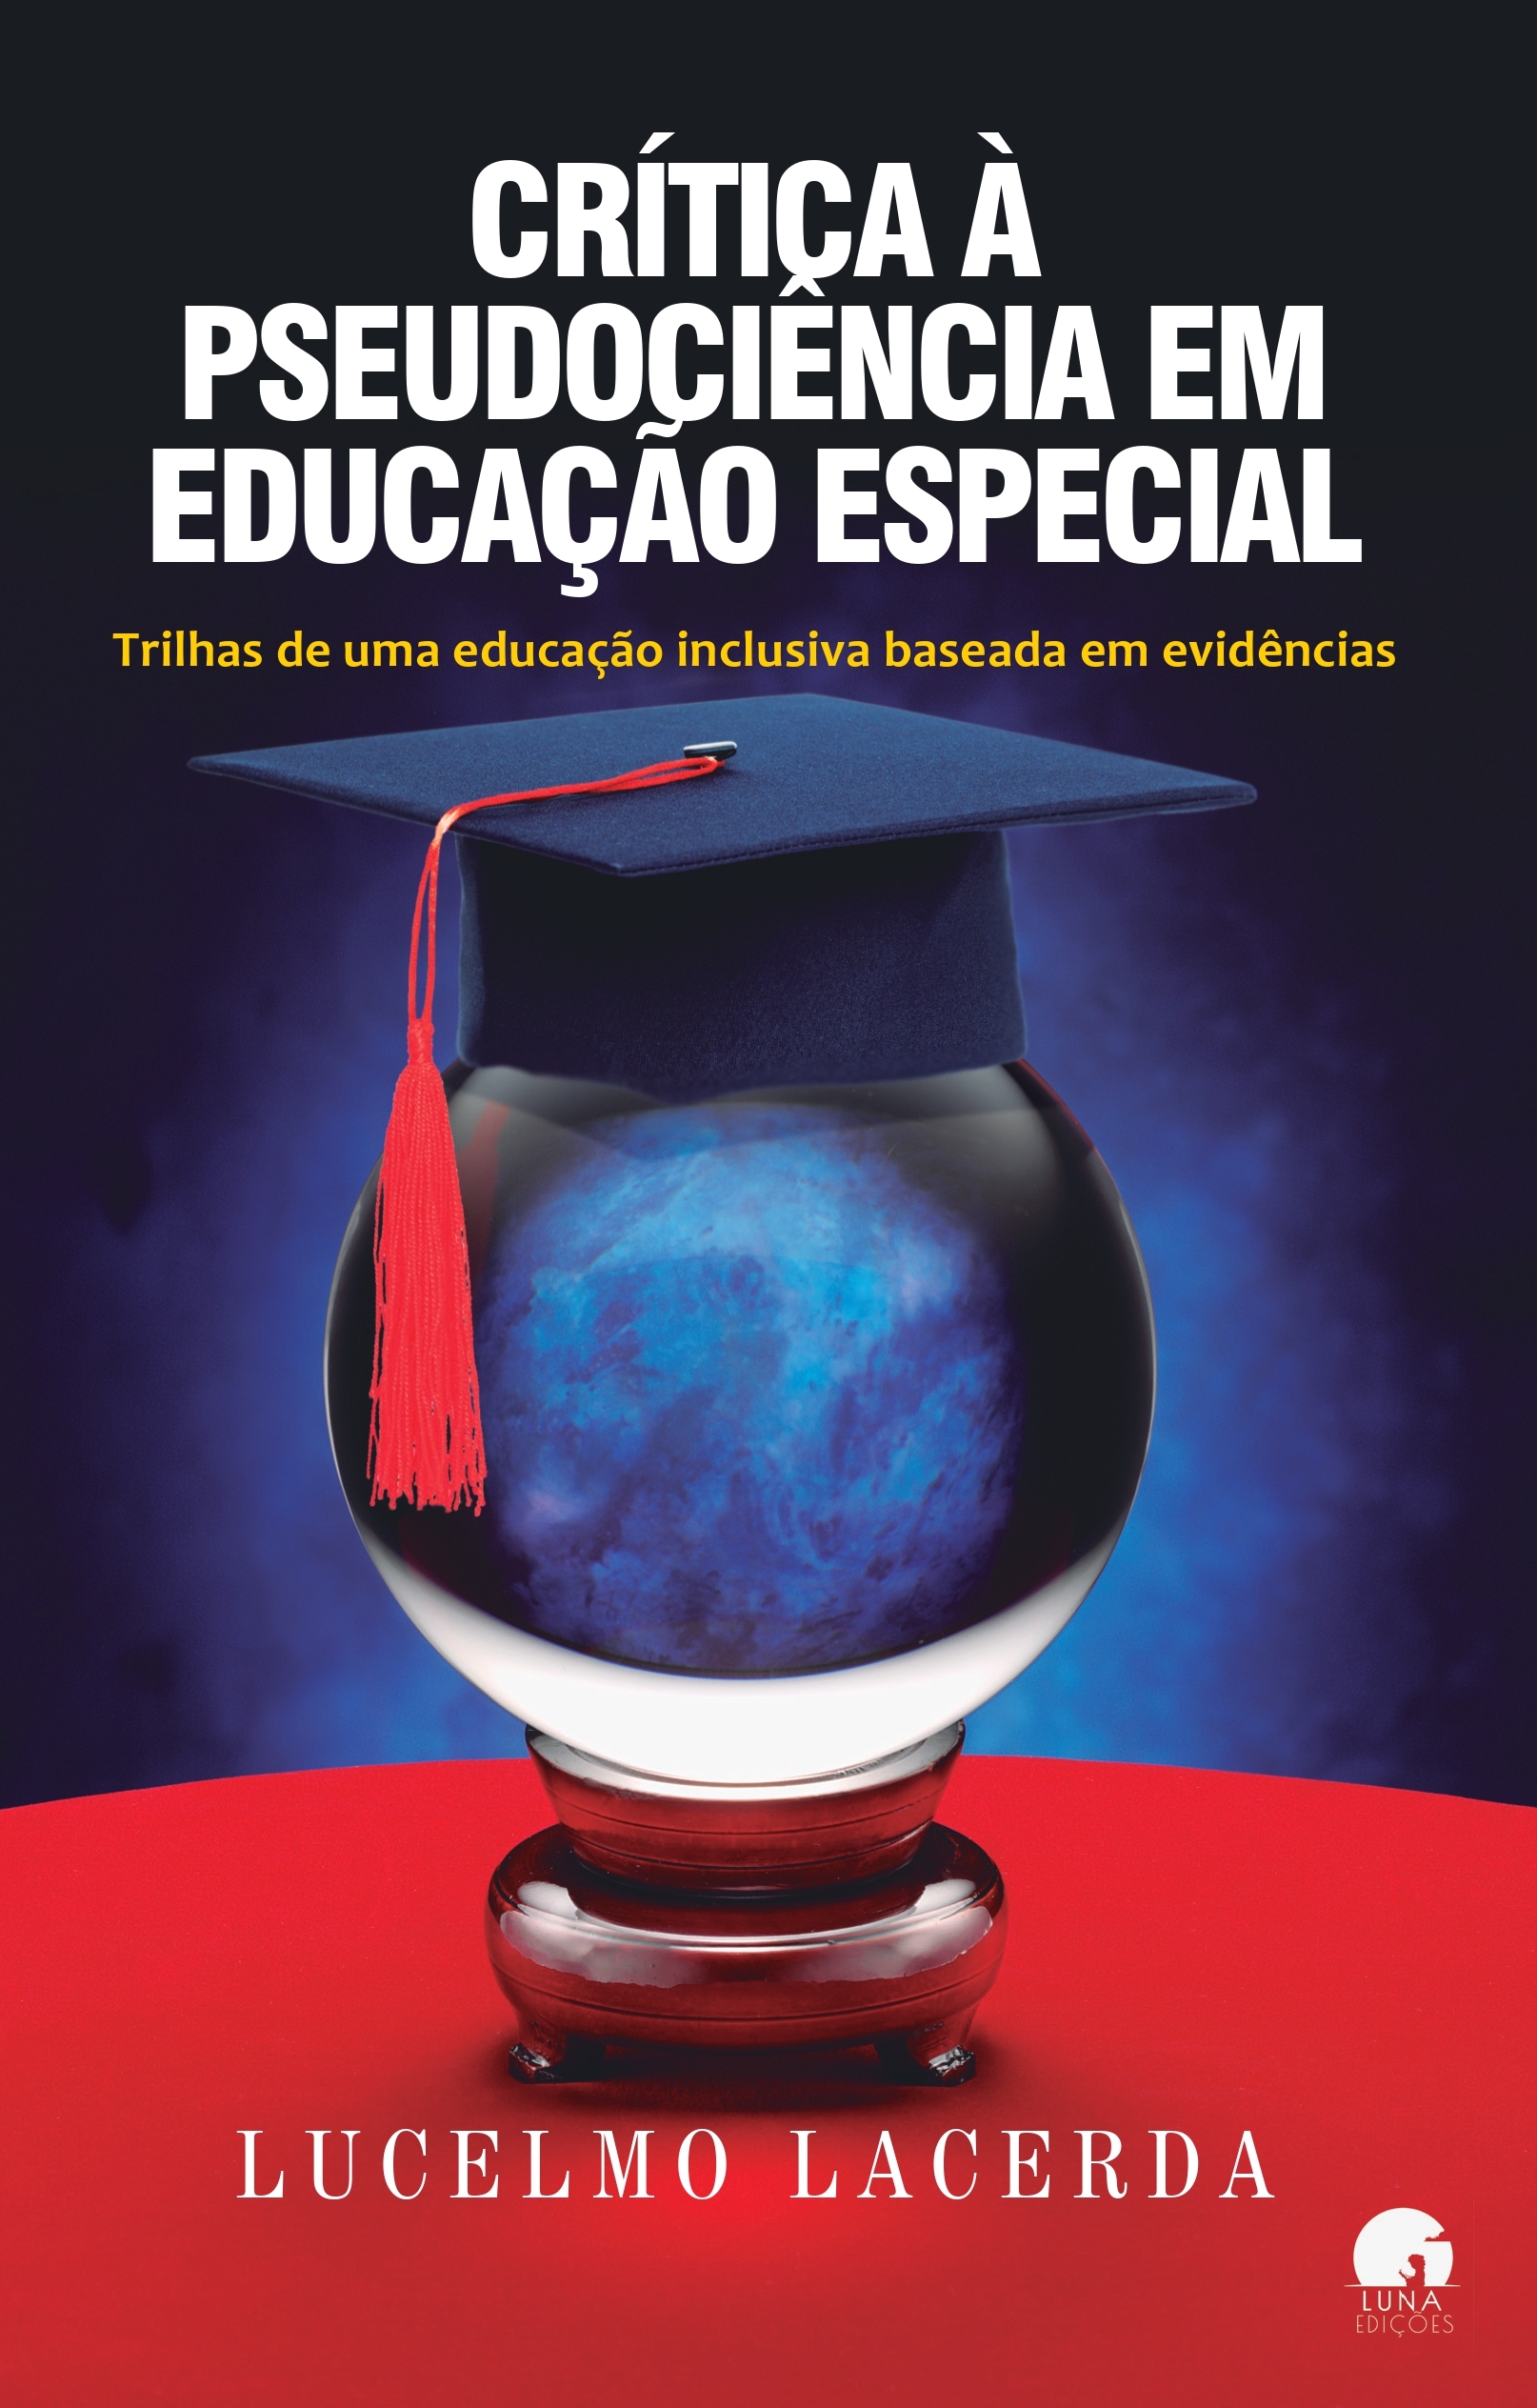 Especializar não é discriminar: doutor em Educação questiona política de inclusão total adotada em escolas brasileiras